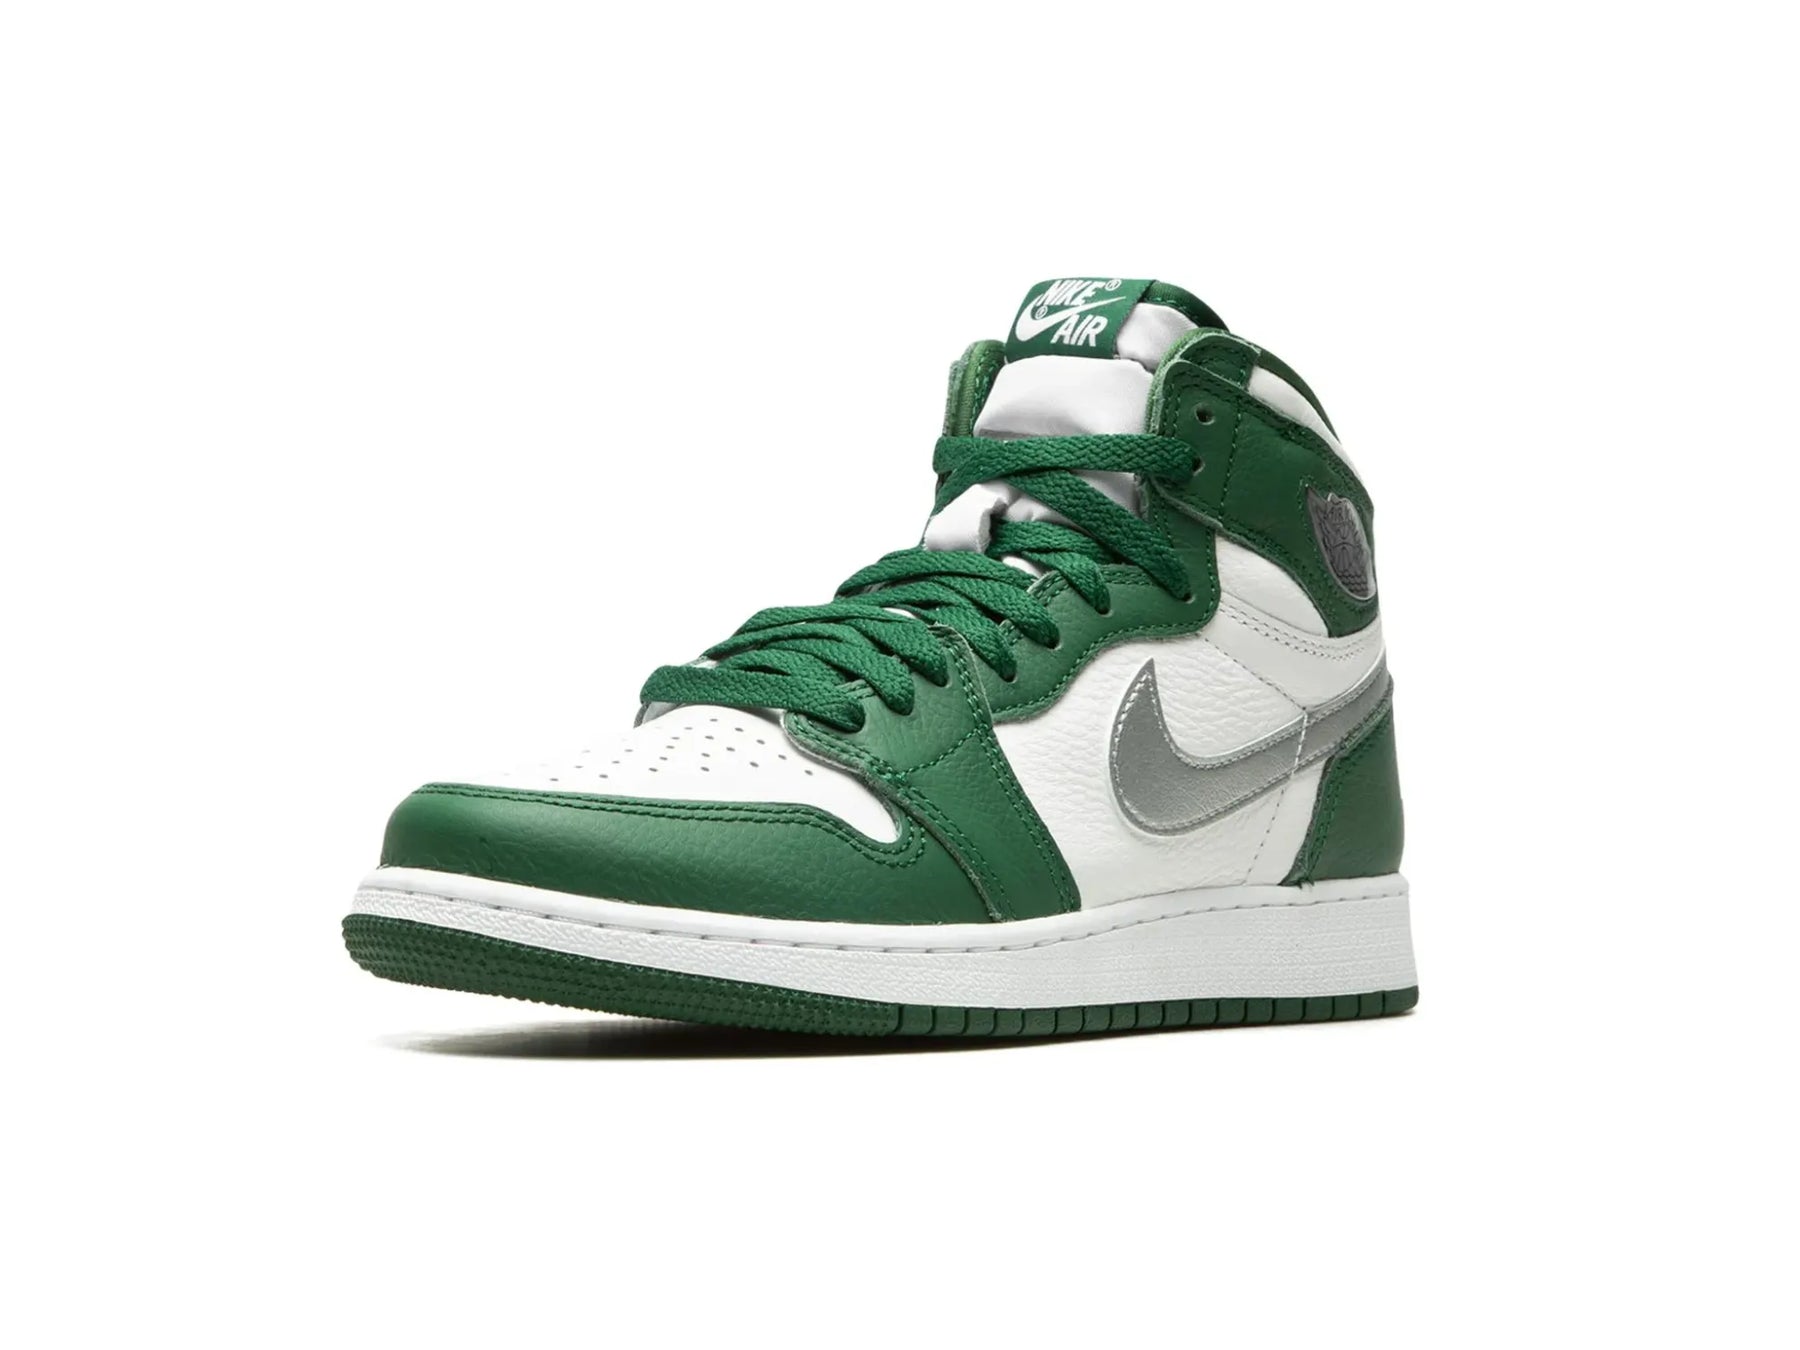 Nike Air Jordan 1 High "Gorge Green" - street-bill.dk